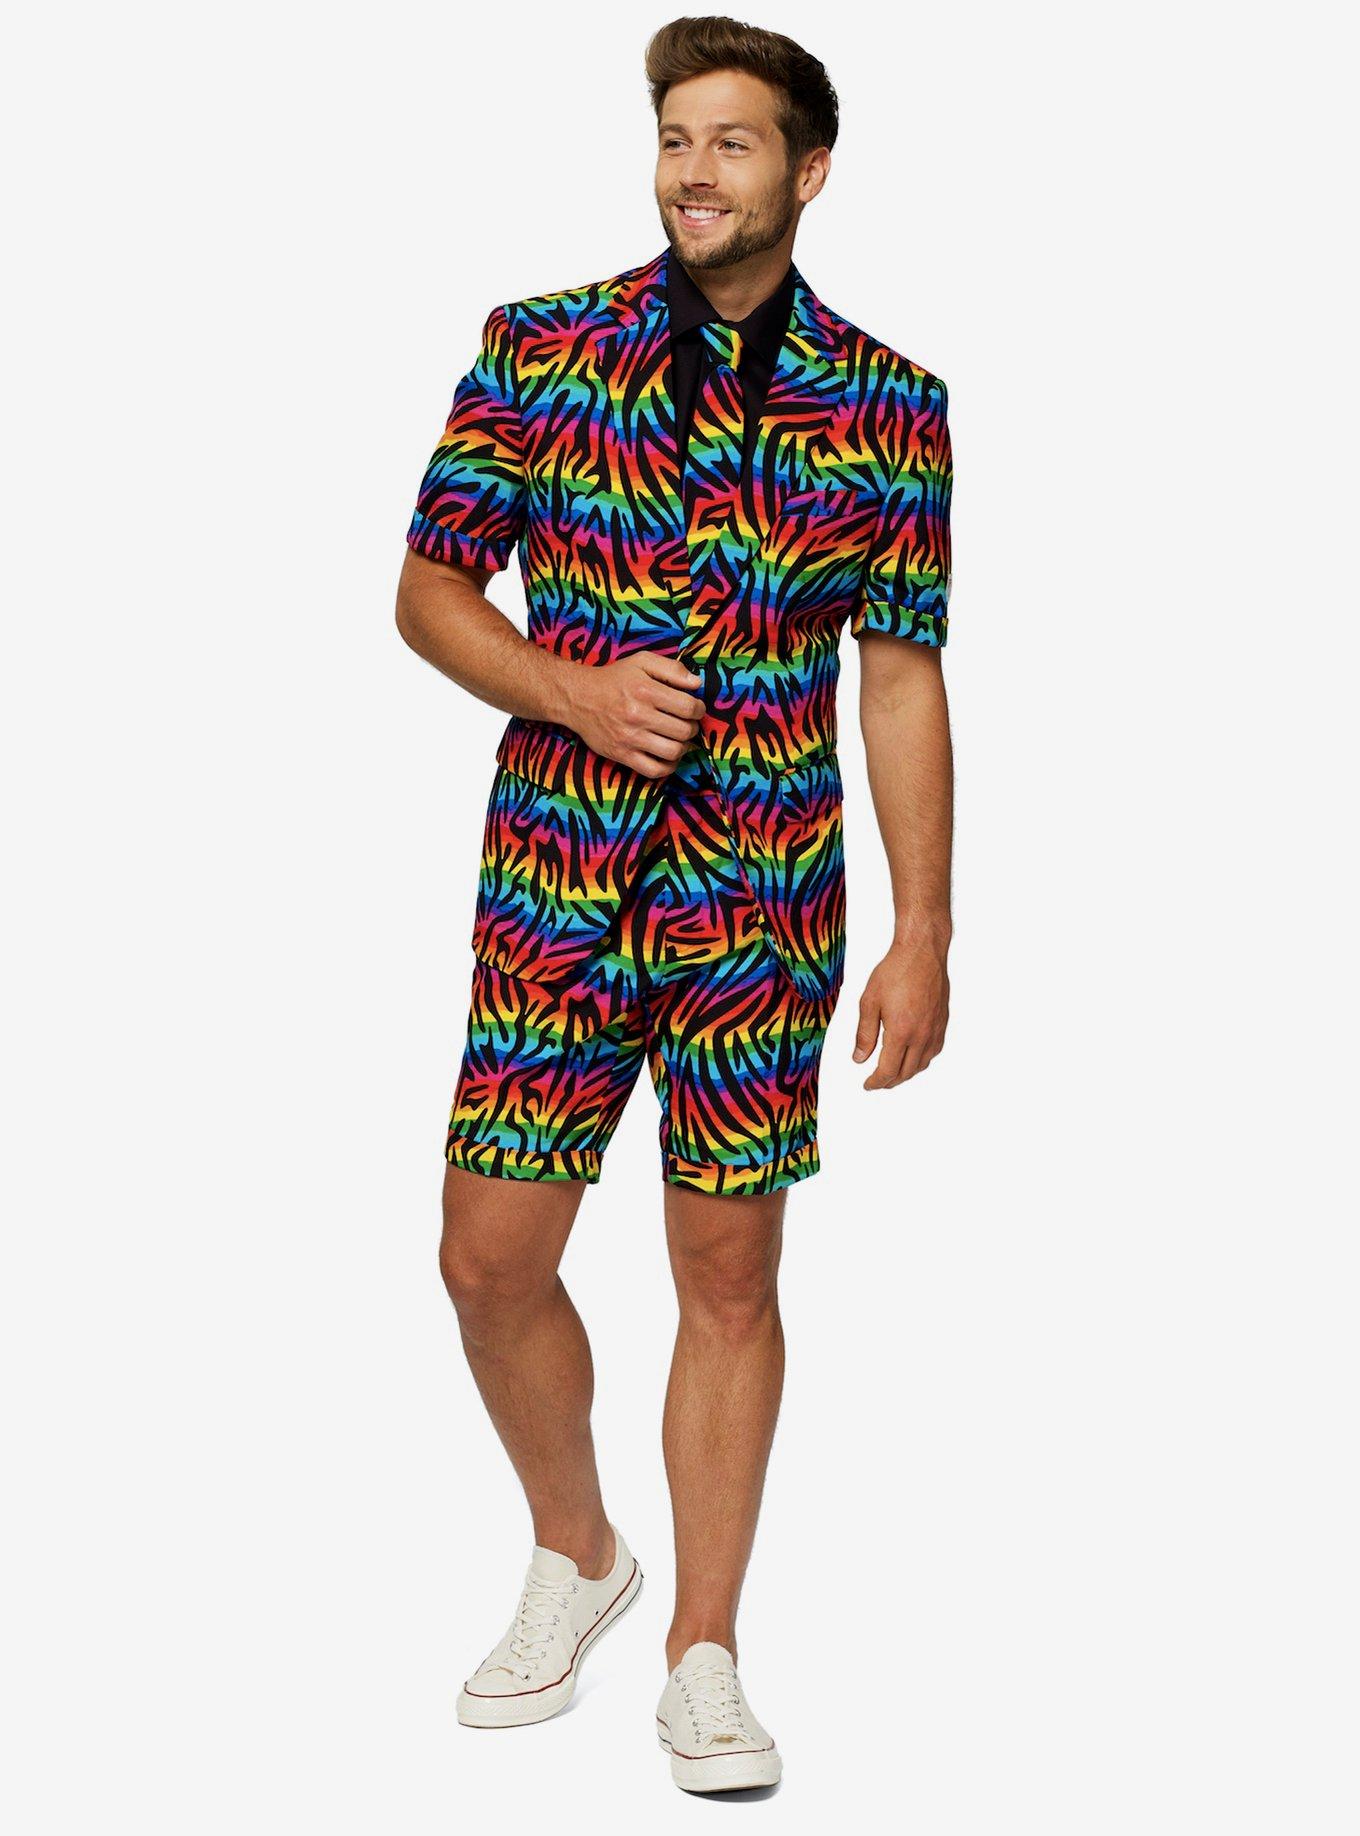 Wild Rainbow Summer Suit